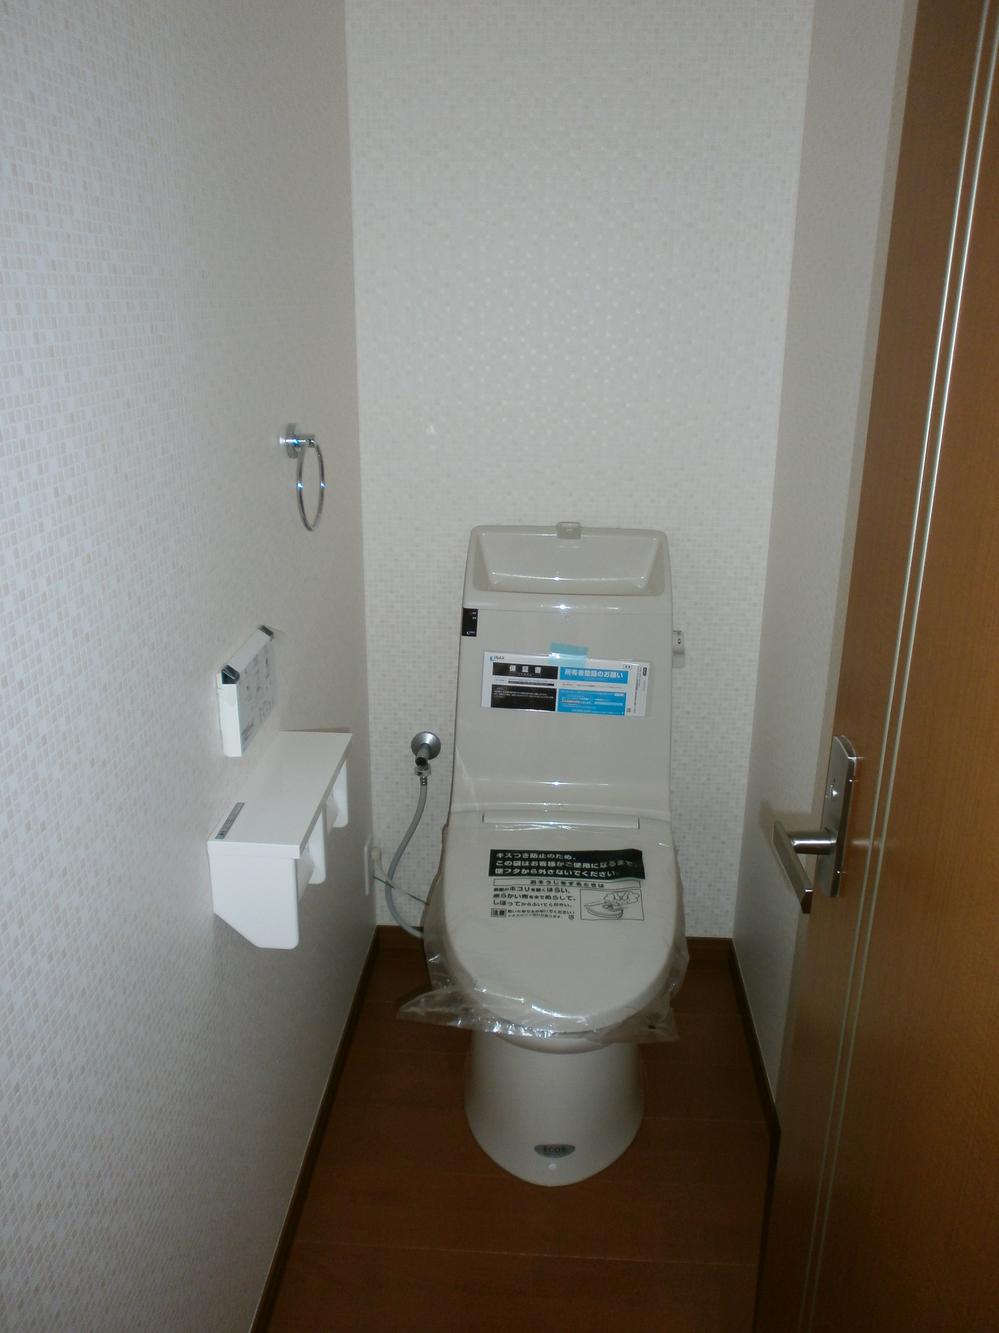 Toilet. Toilets are water-saving toilet